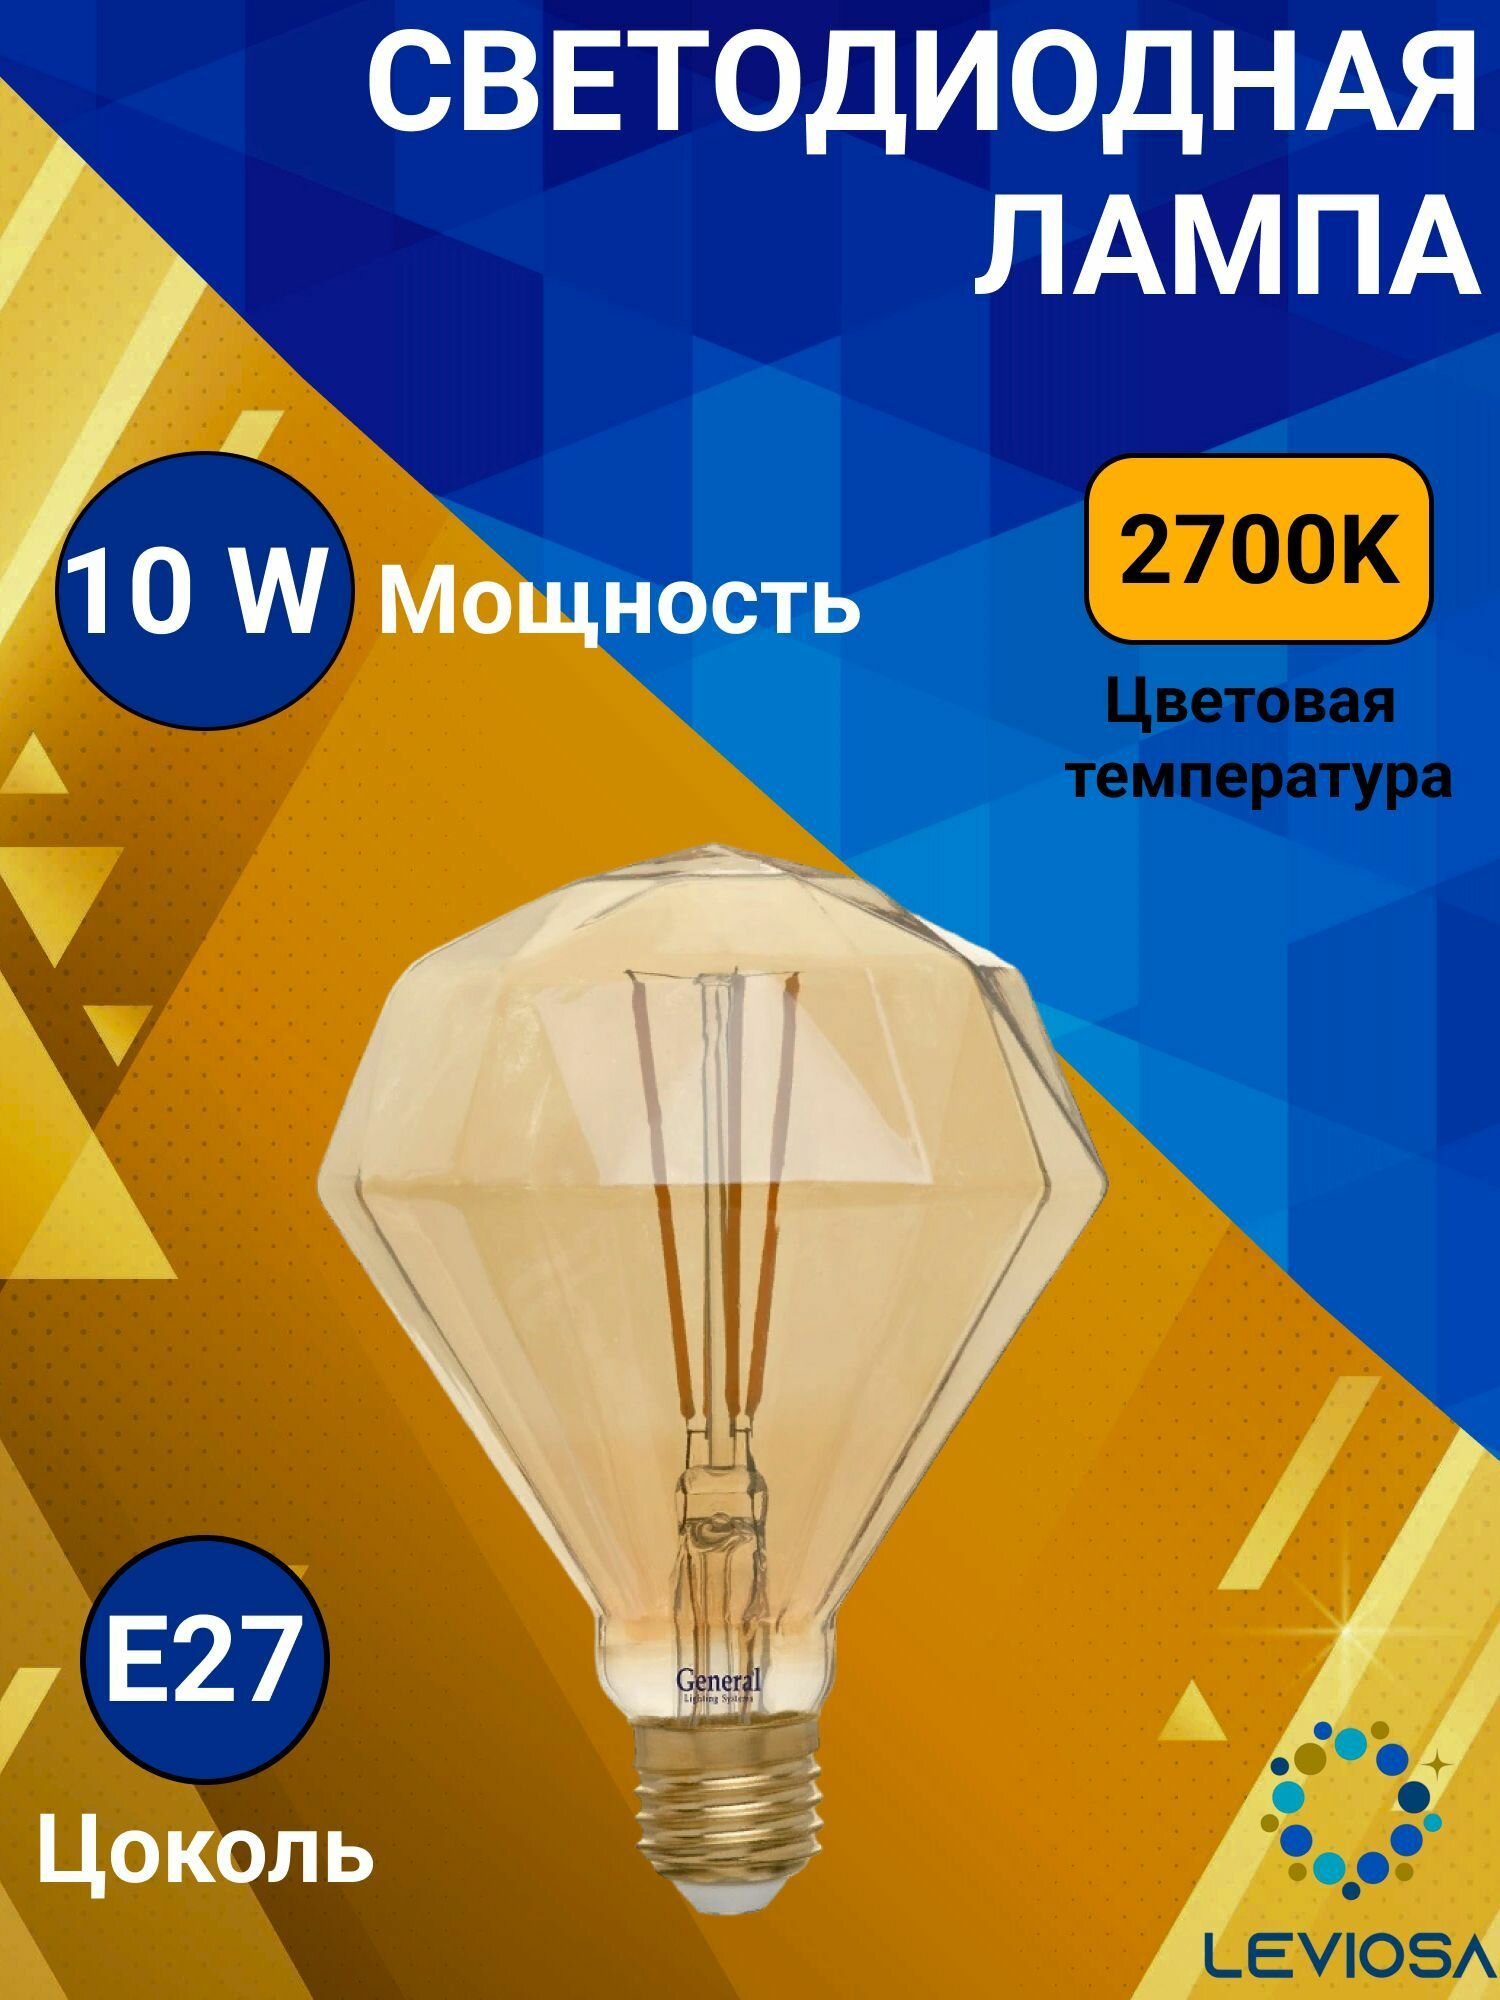 Светодиодна лампа General E27 10W 2700К